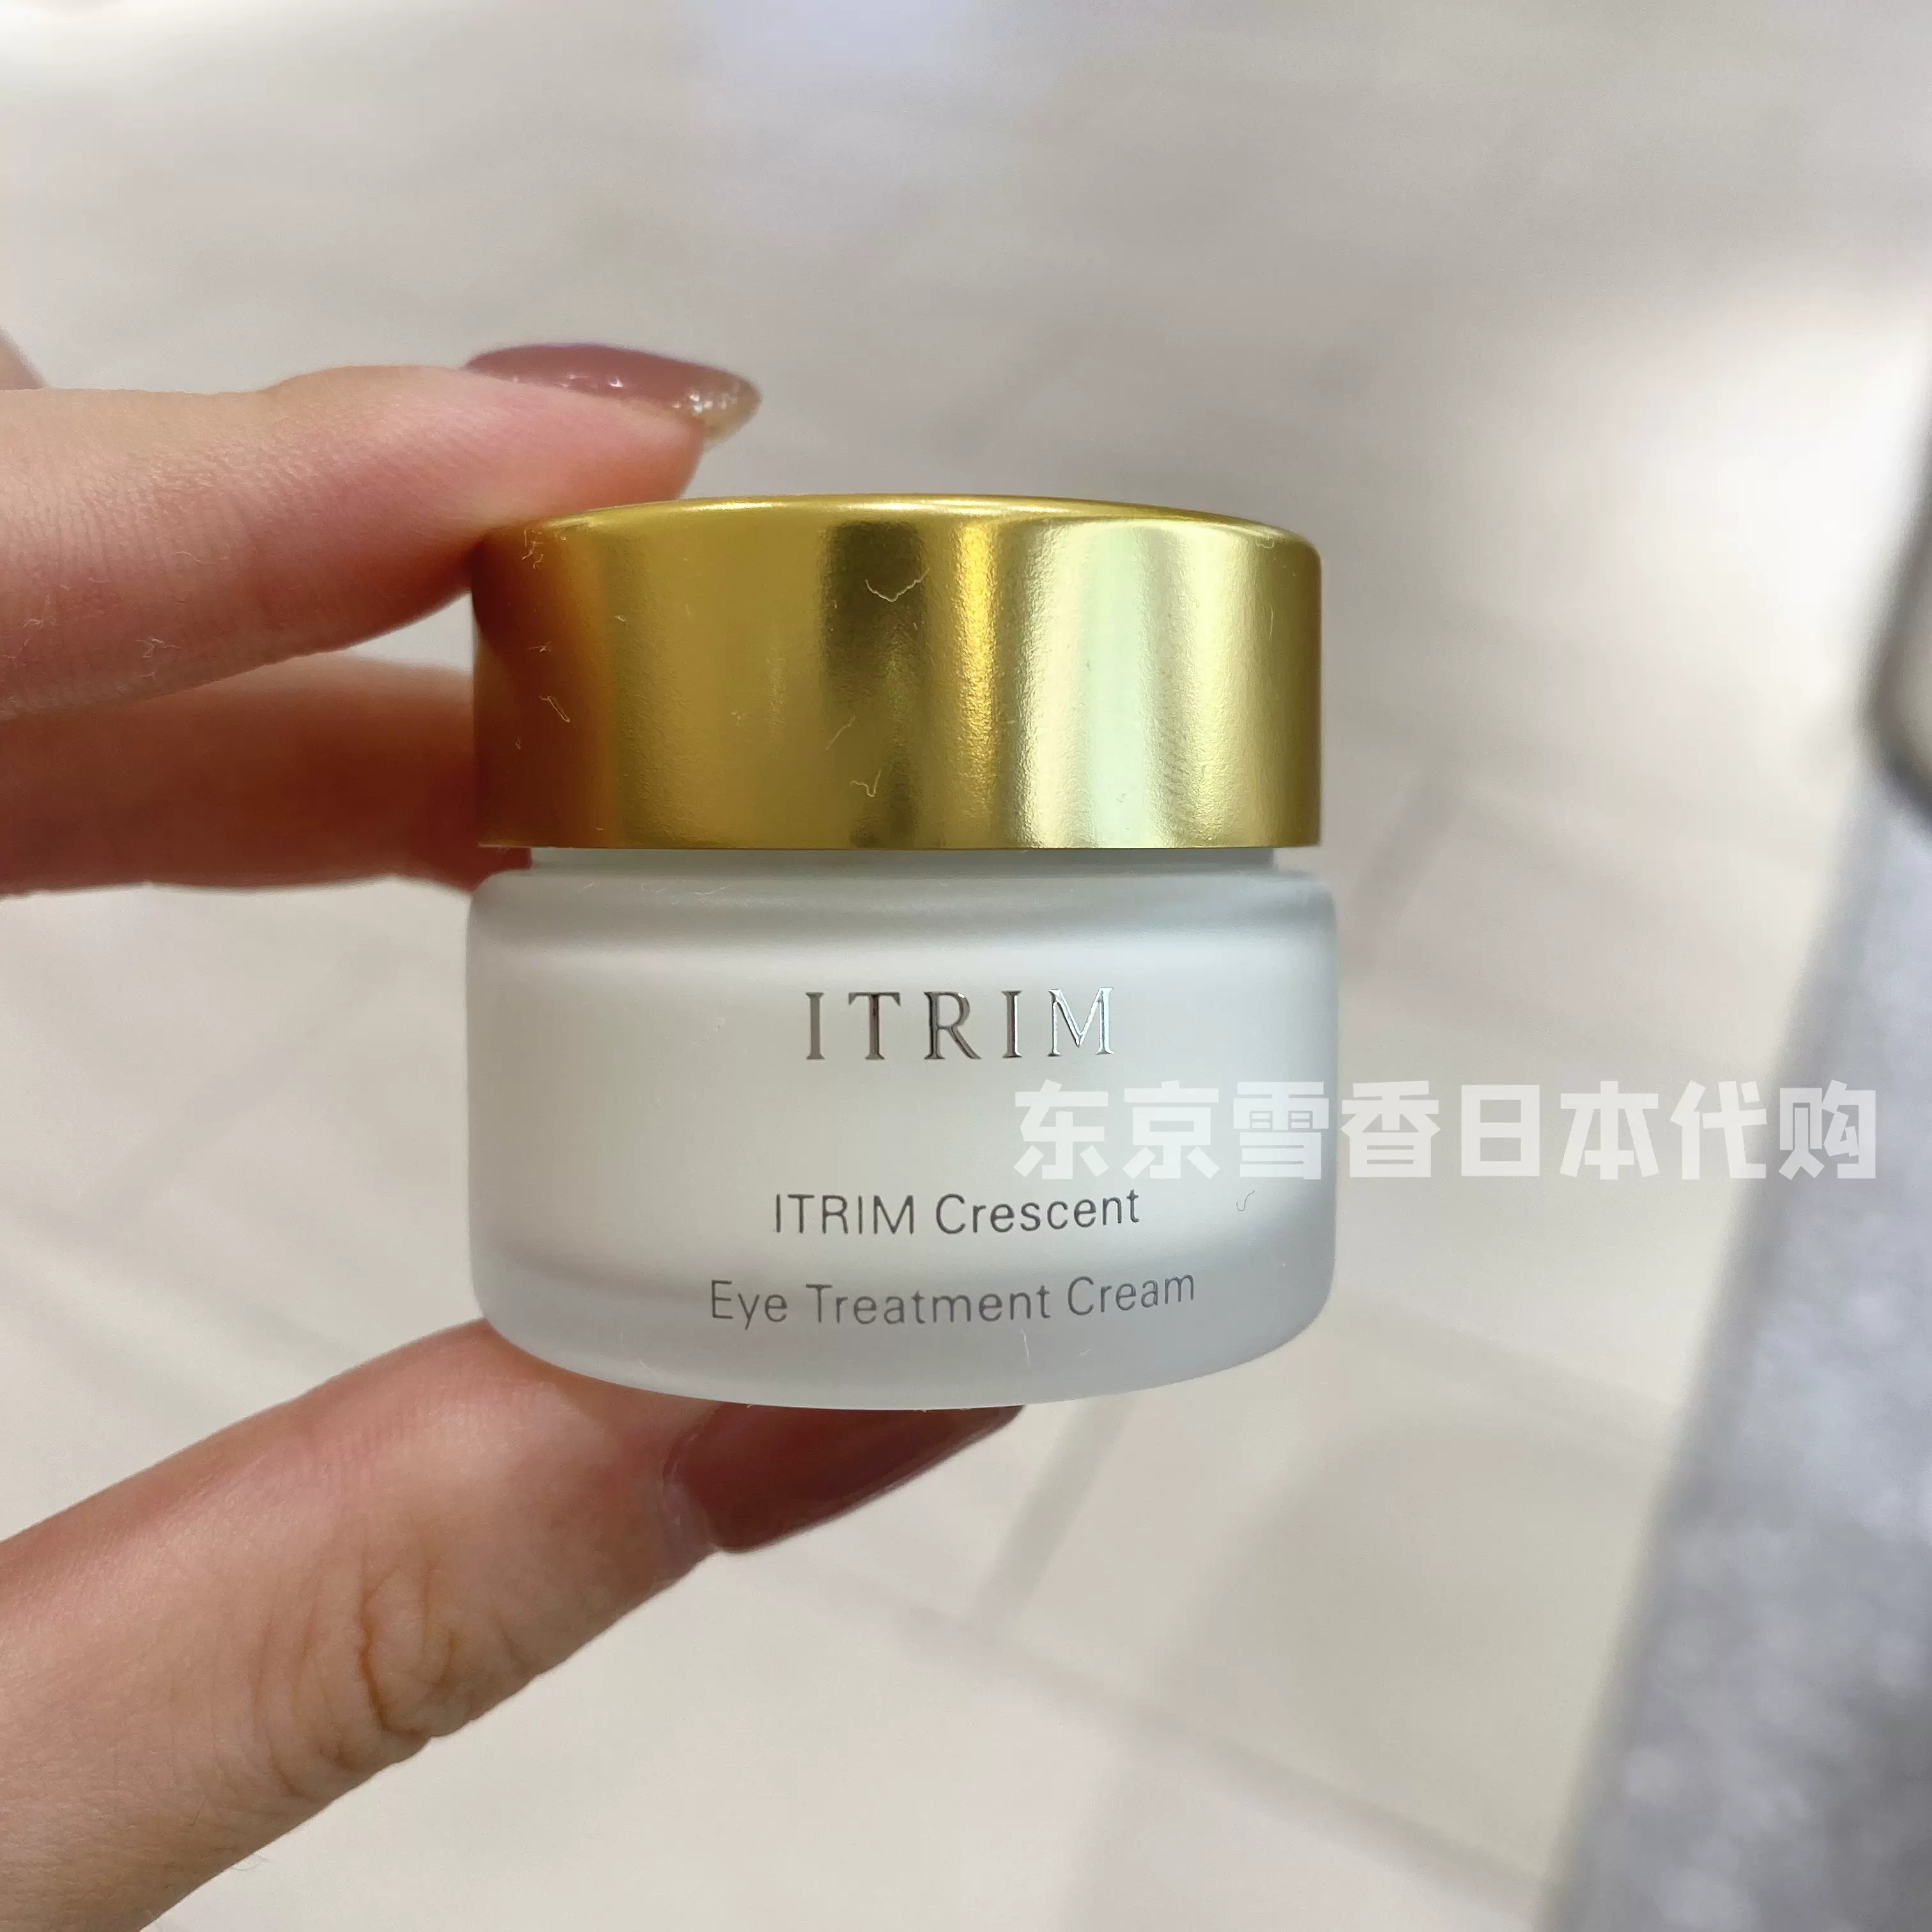 日本代购直邮贵妇品牌ITRIM 天然有机植物抗老保湿眼霜12g-Taobao